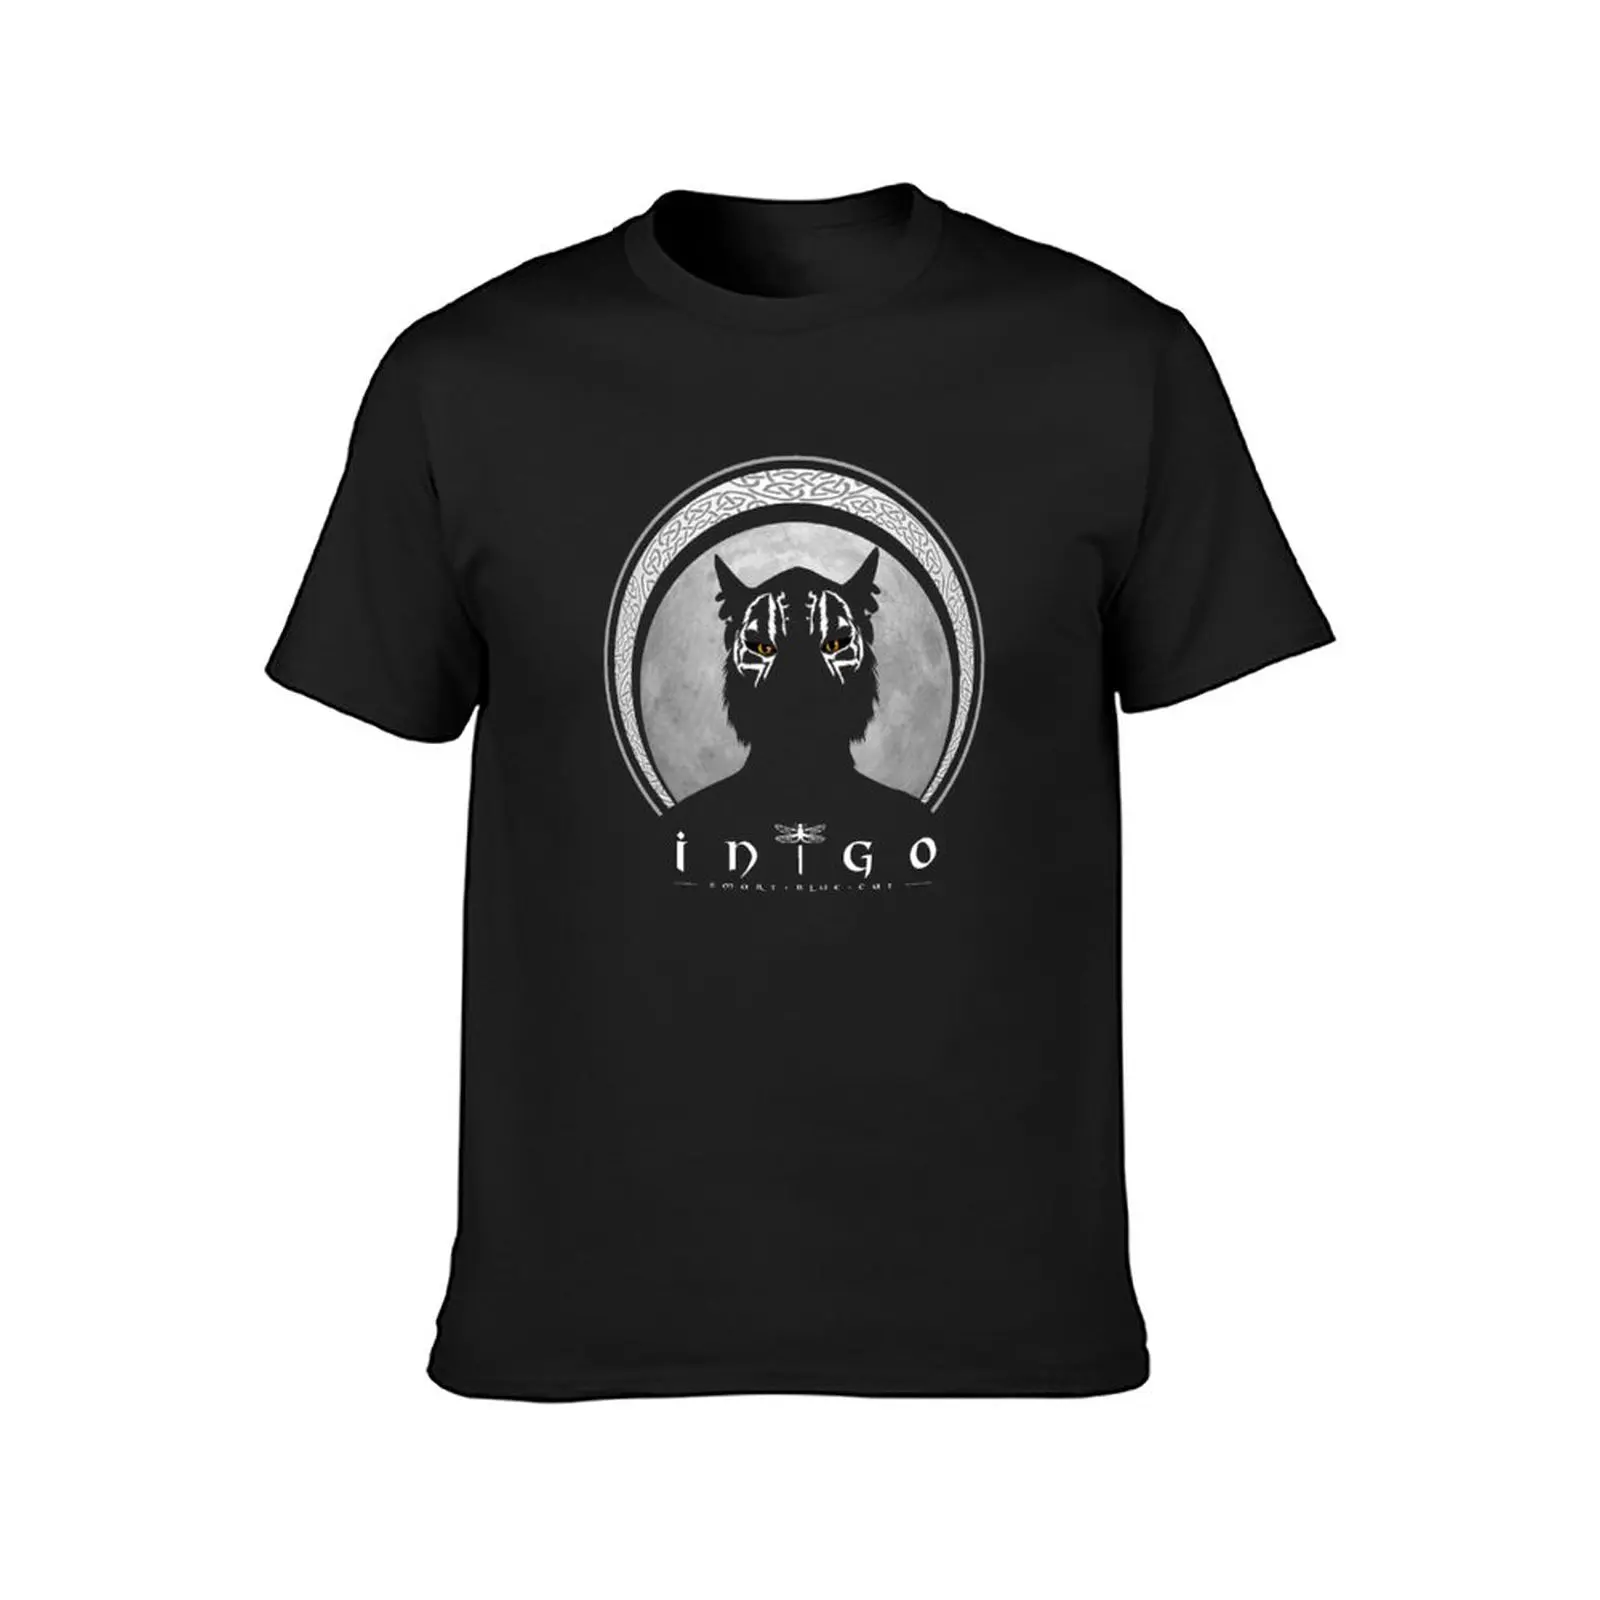 Тениска Inigo със силует (за по-тъмните нюанси), тениска new edition, графични тениски, тениски оверсайз, тениски, мъжки t-shirt модел Изображение 1